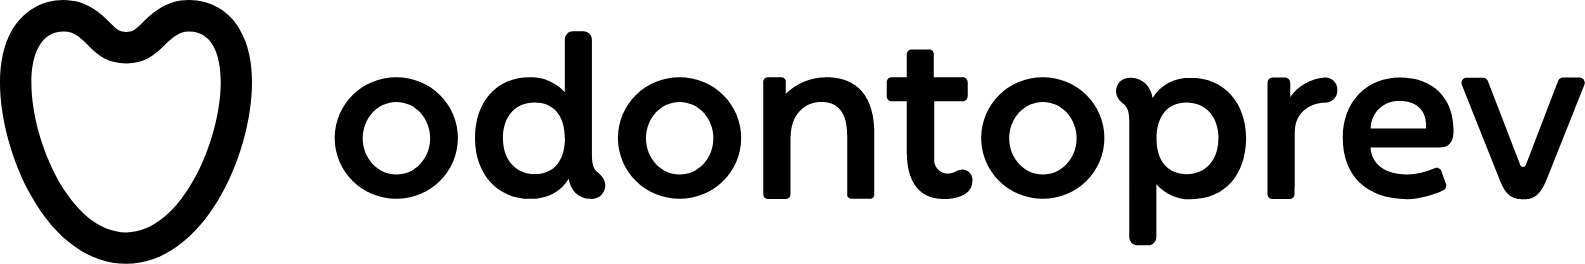 OdontoPrev logo large (transparent PNG)